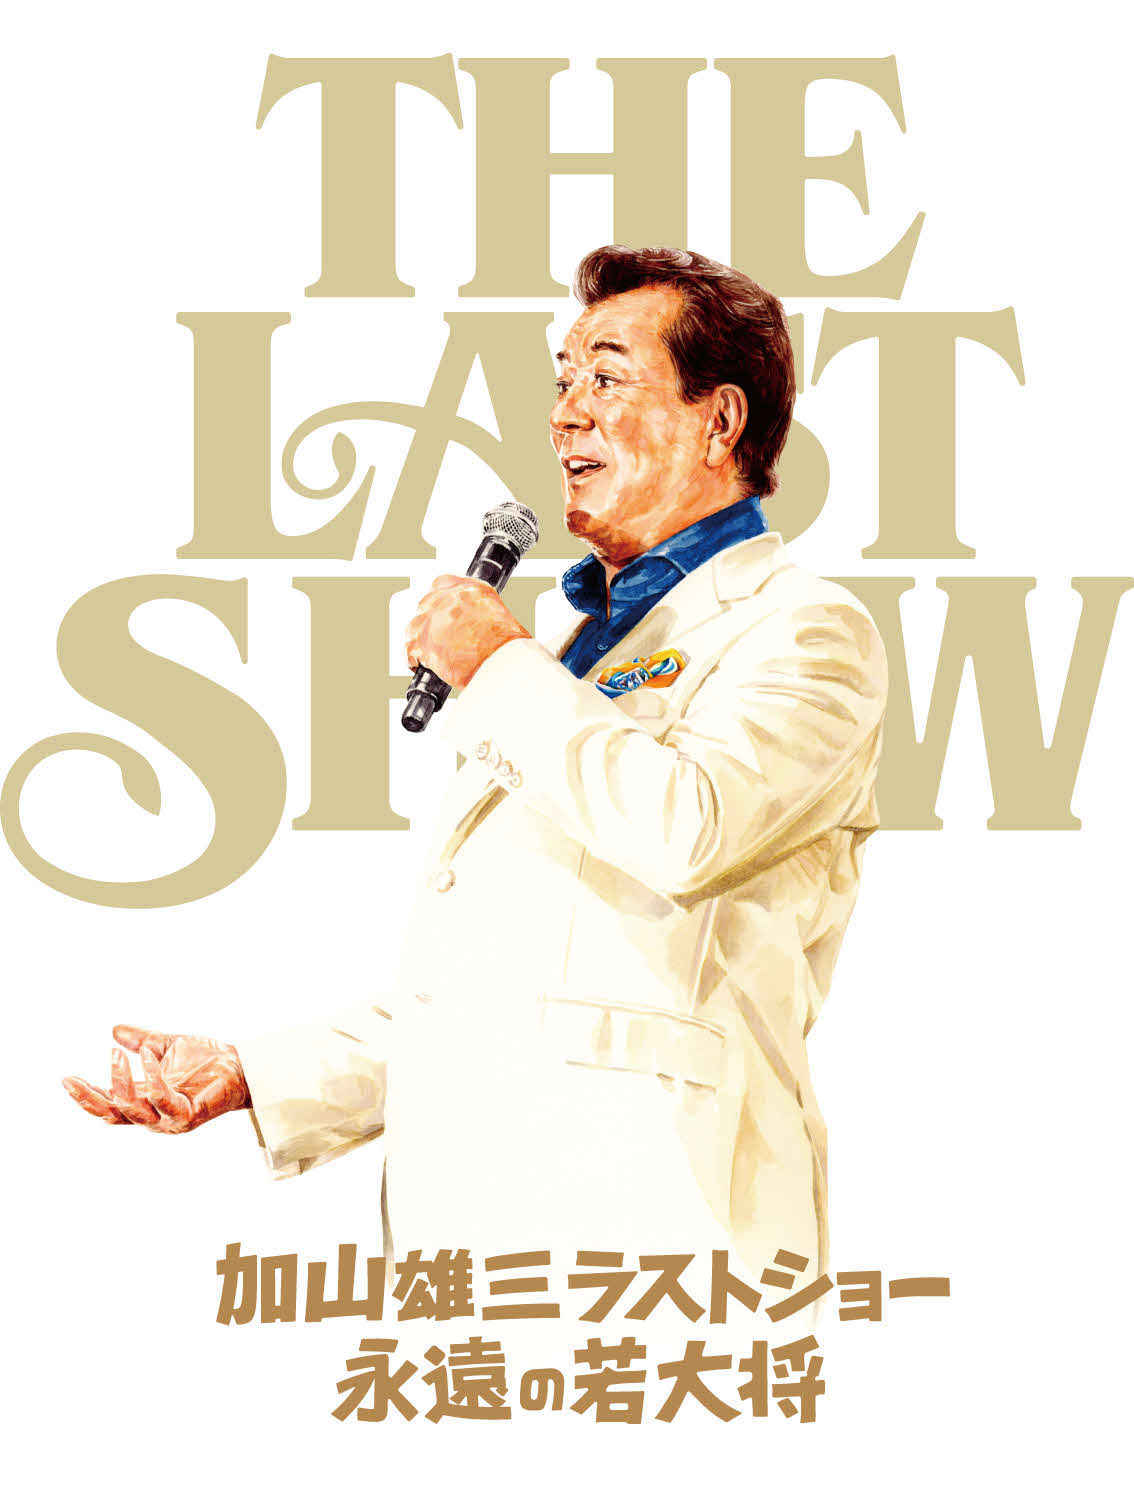 年内でのコンサート活動終了を発表した加山雄三の9月9日に東京国際フォーラムAで行う公演のポスタービジュアル